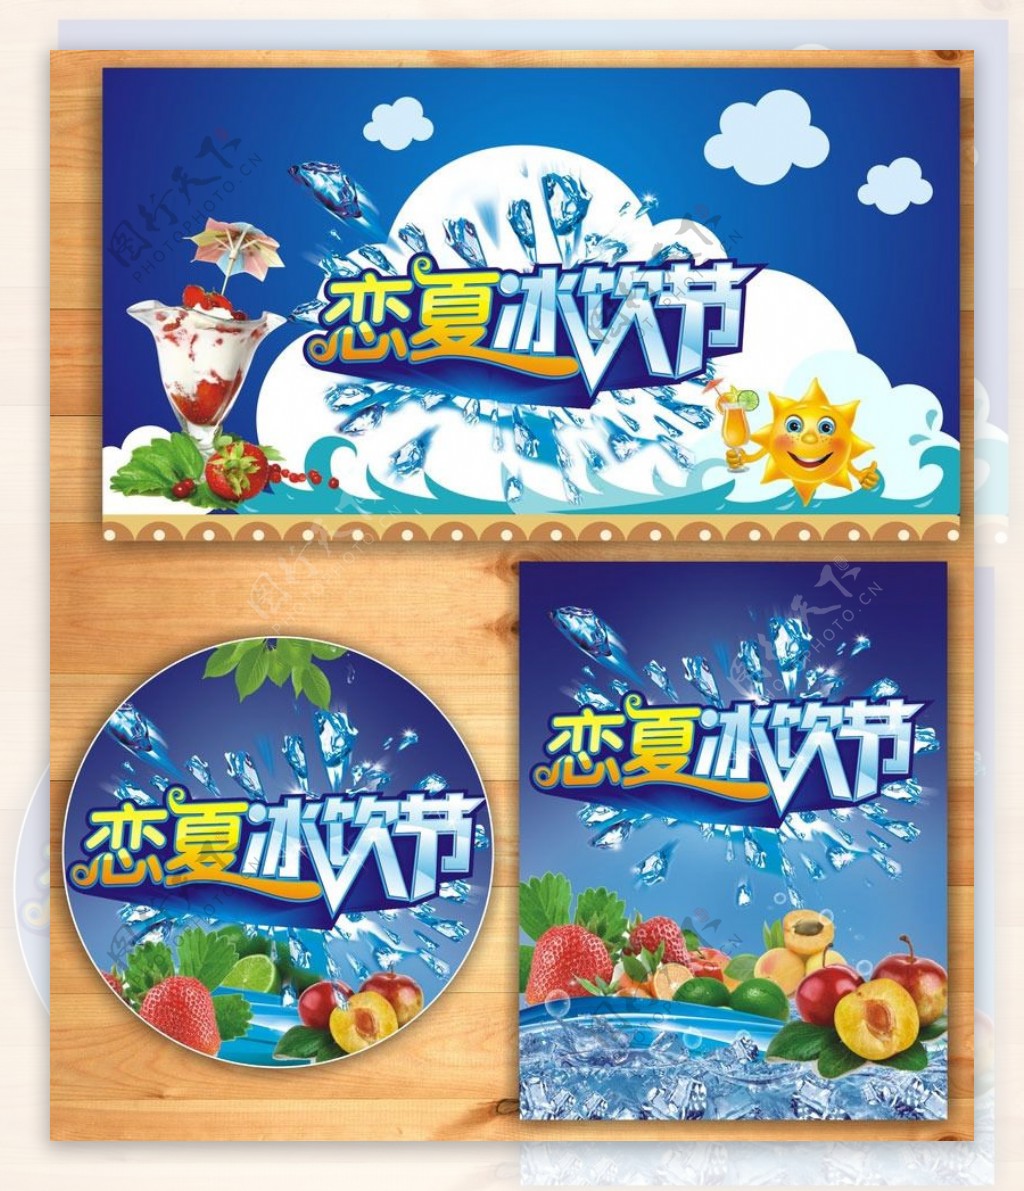 夏季冰饮节促销海报设计矢量素材